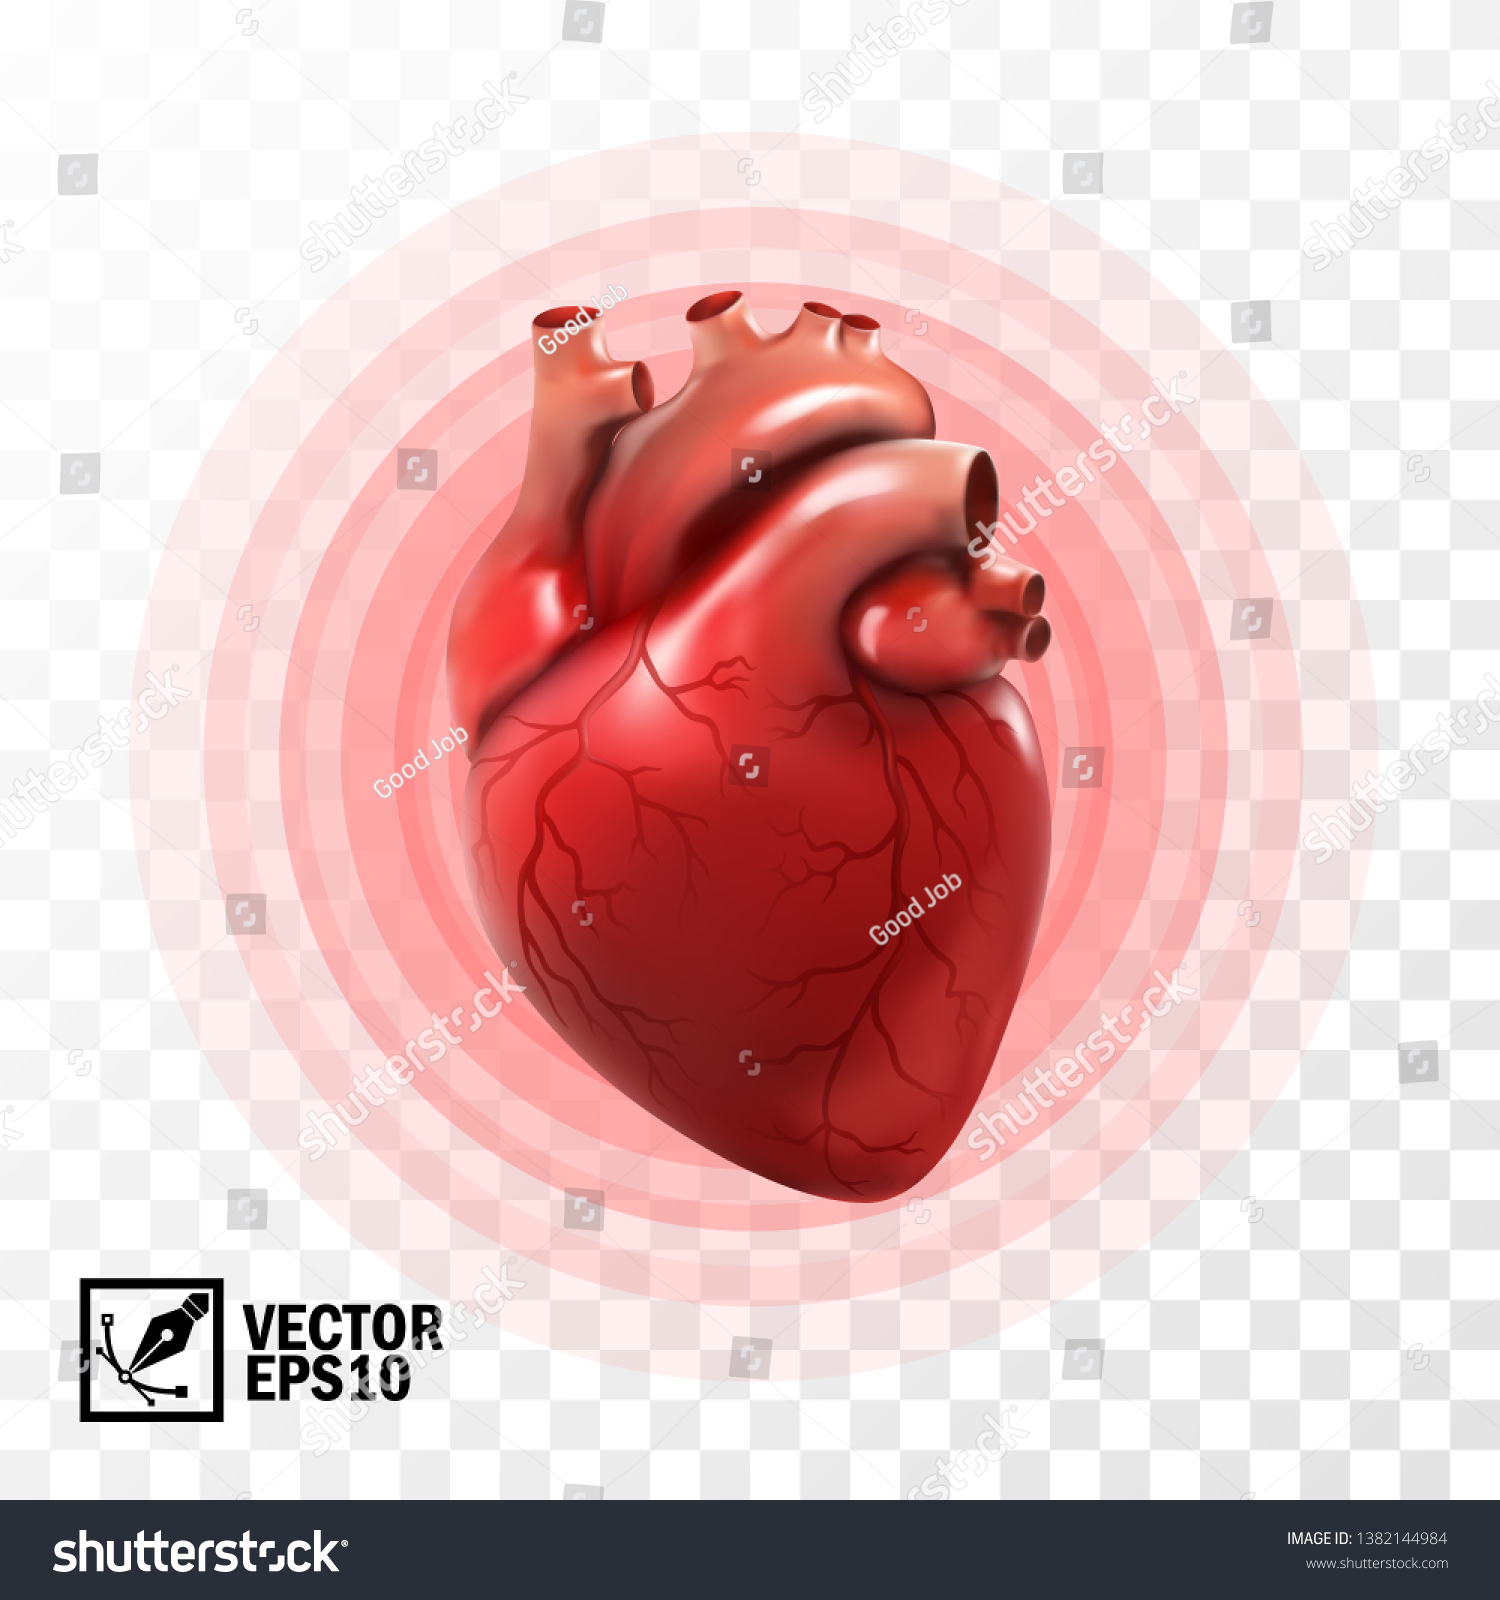 人の心臓 円脈動 心臓発作 解剖学的に静脈系の心臓を補正する3dの現実的なベクター画像 のベクター画像素材 ロイヤリティフリー